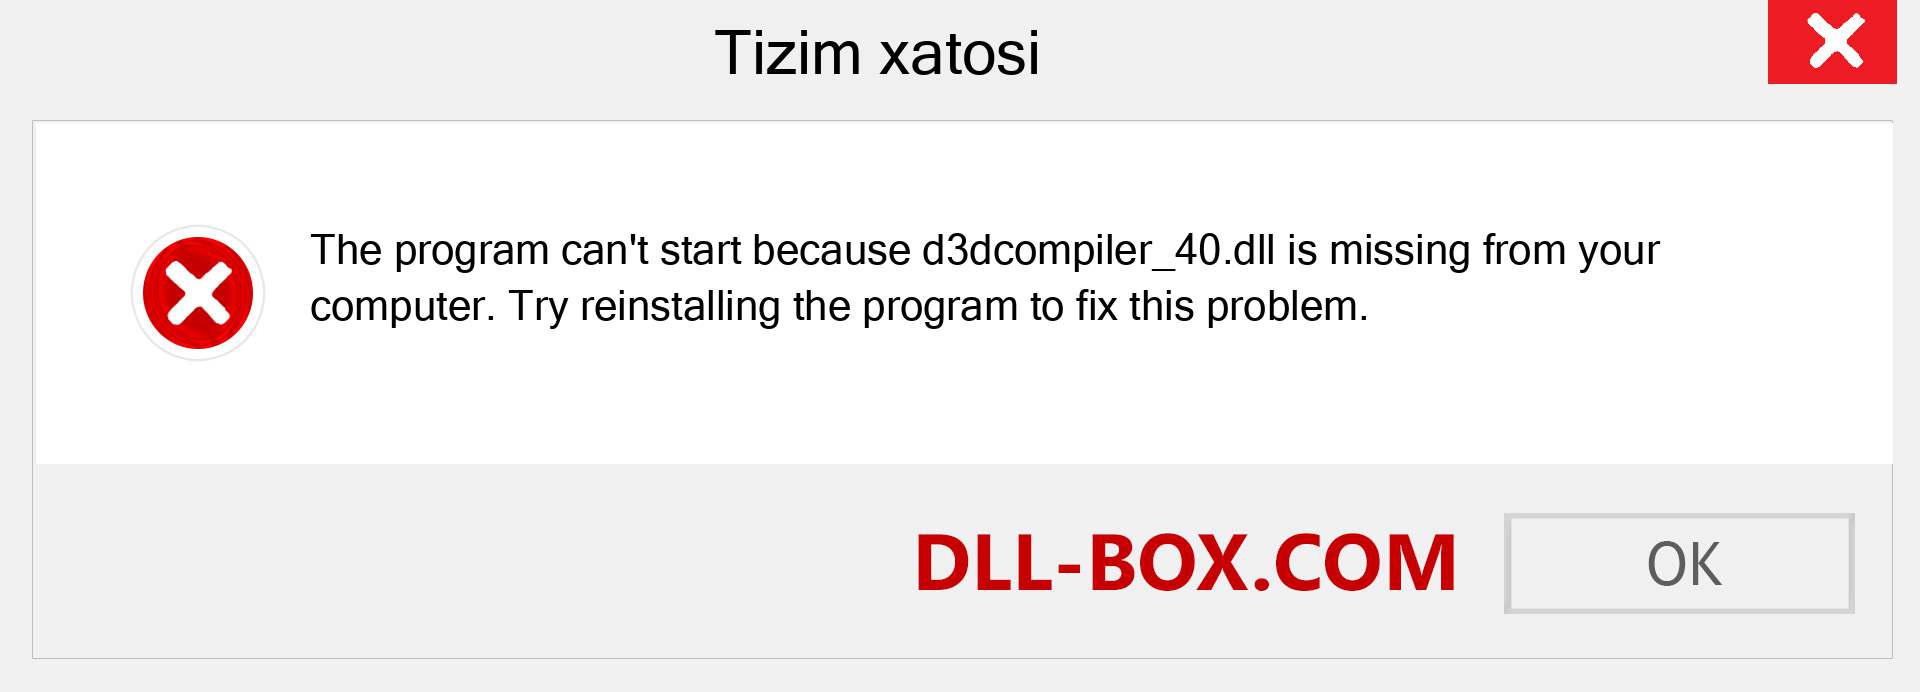 d3dcompiler_40.dll fayli yo'qolganmi?. Windows 7, 8, 10 uchun yuklab olish - Windowsda d3dcompiler_40 dll etishmayotgan xatoni tuzating, rasmlar, rasmlar